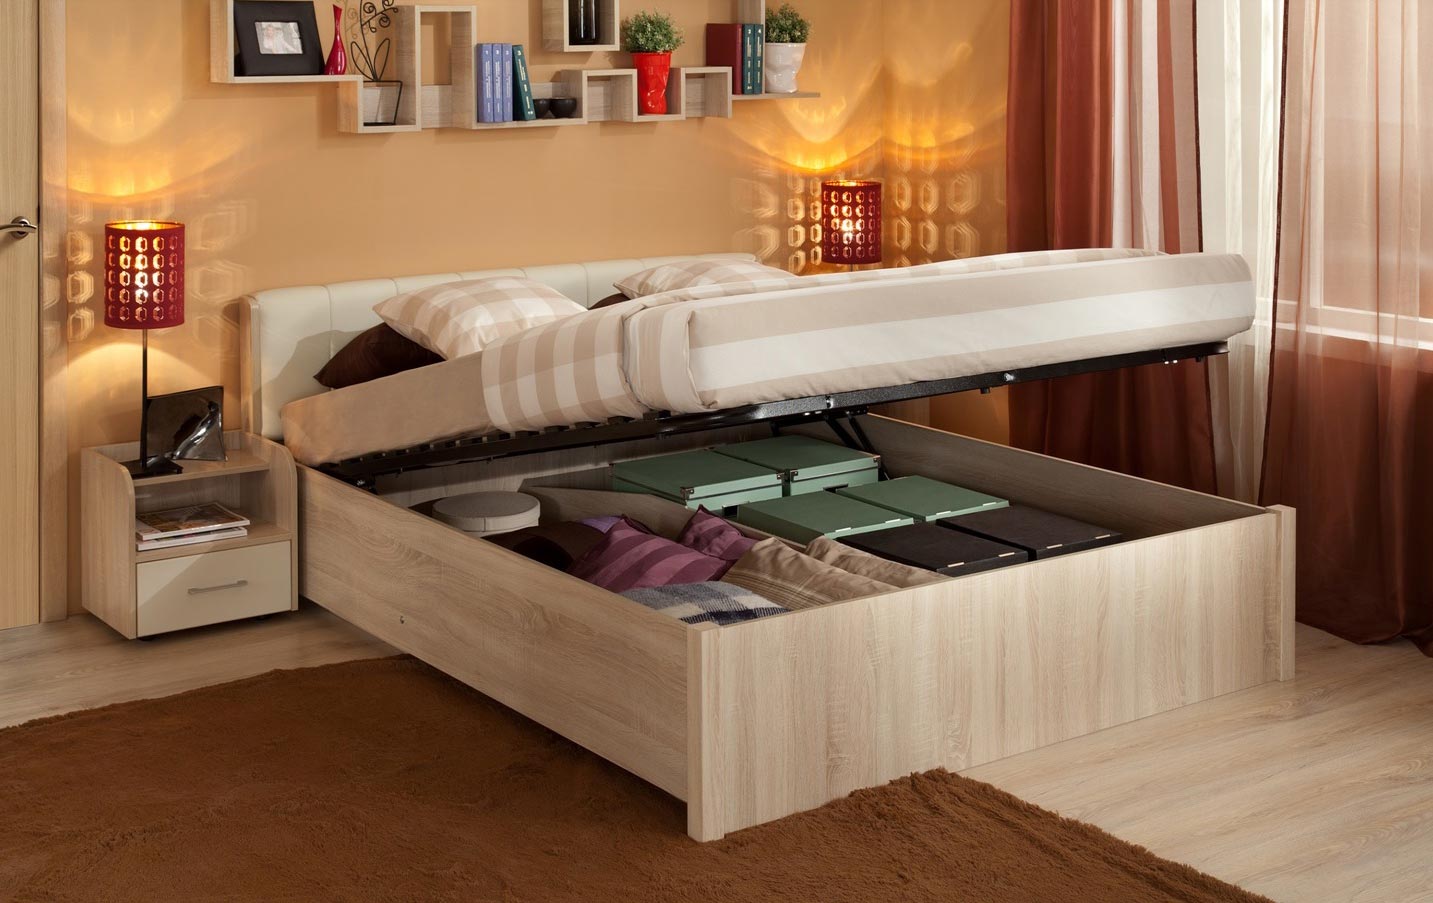 Функциональность, стиль, дизайн: двуспальная кровать с подъёмным механизмом